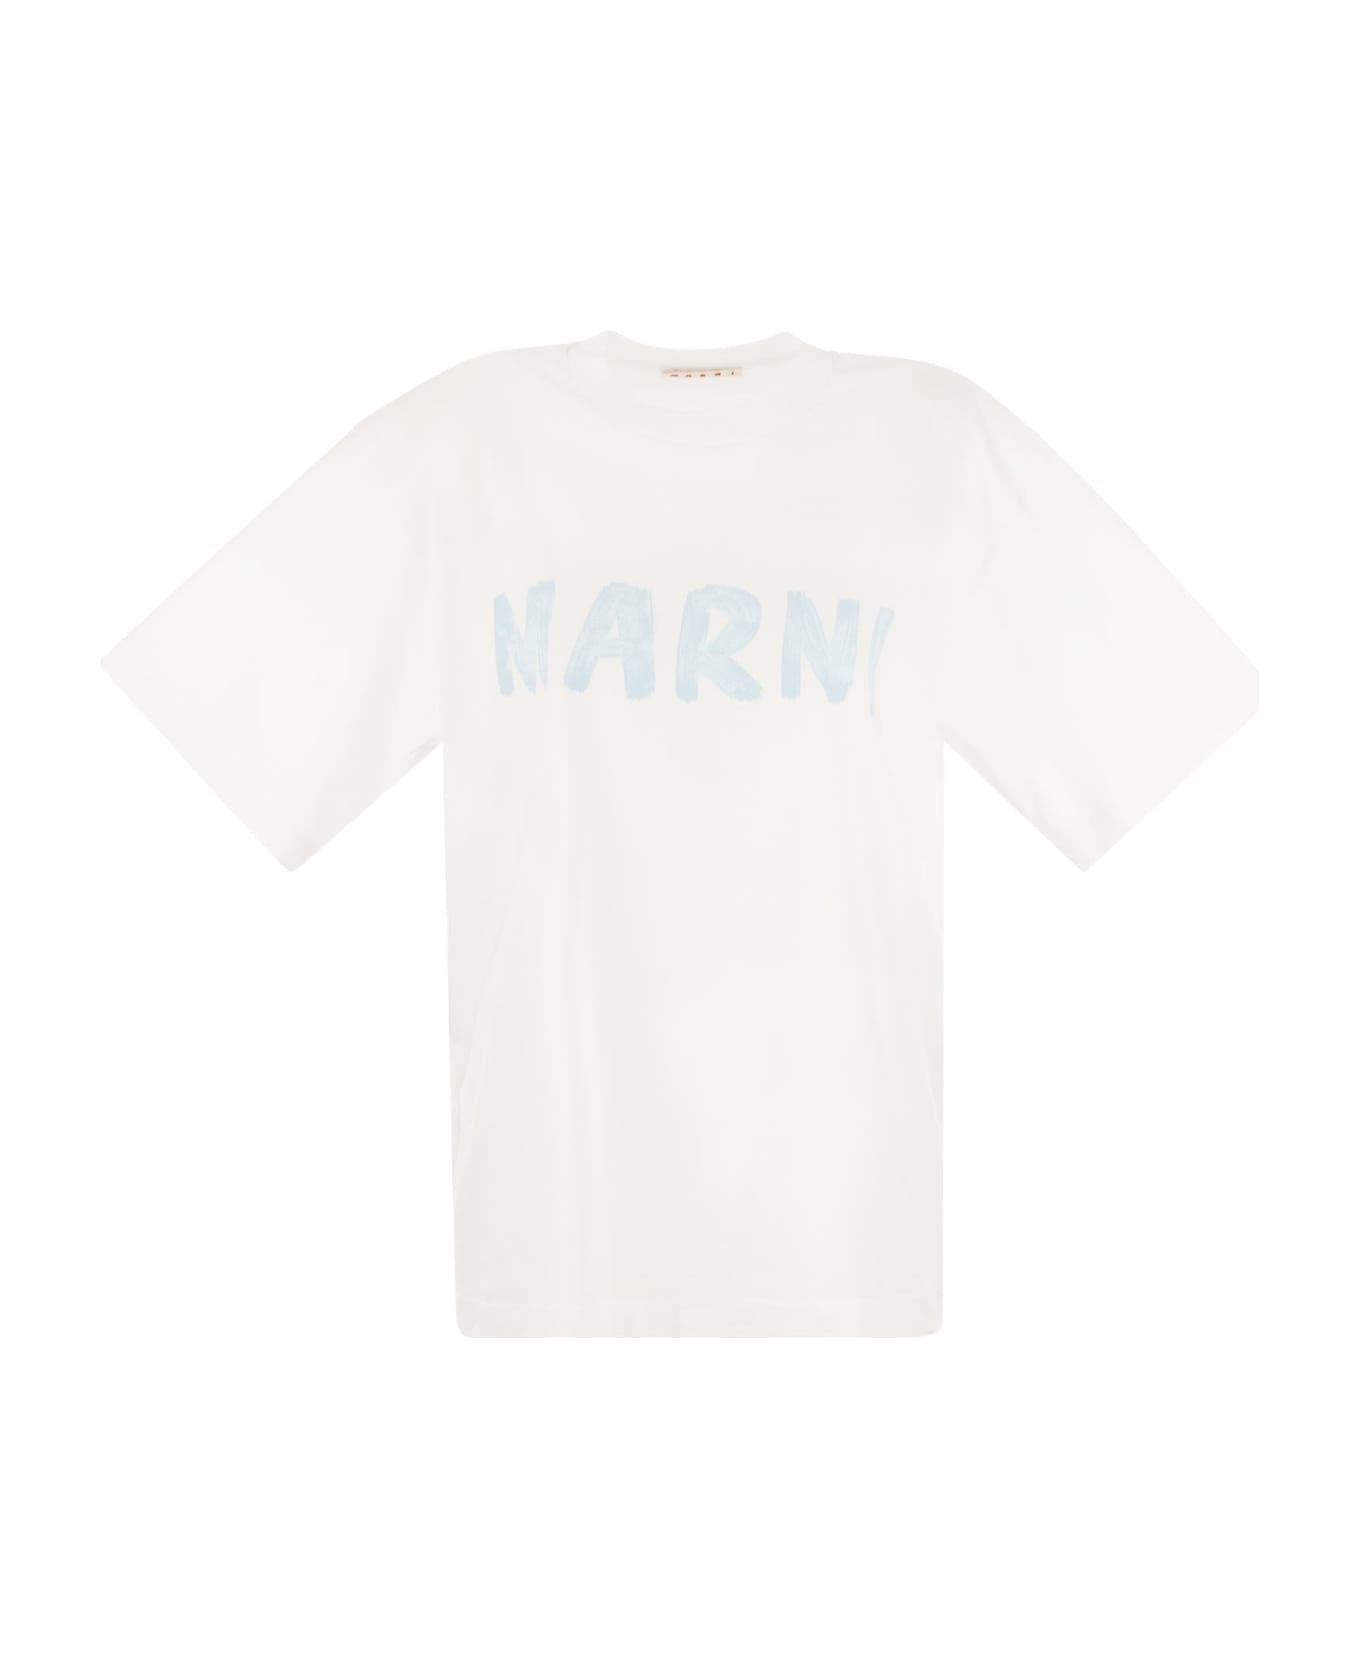 Marni Cotton Jersey T-shirt With Marni Print - White